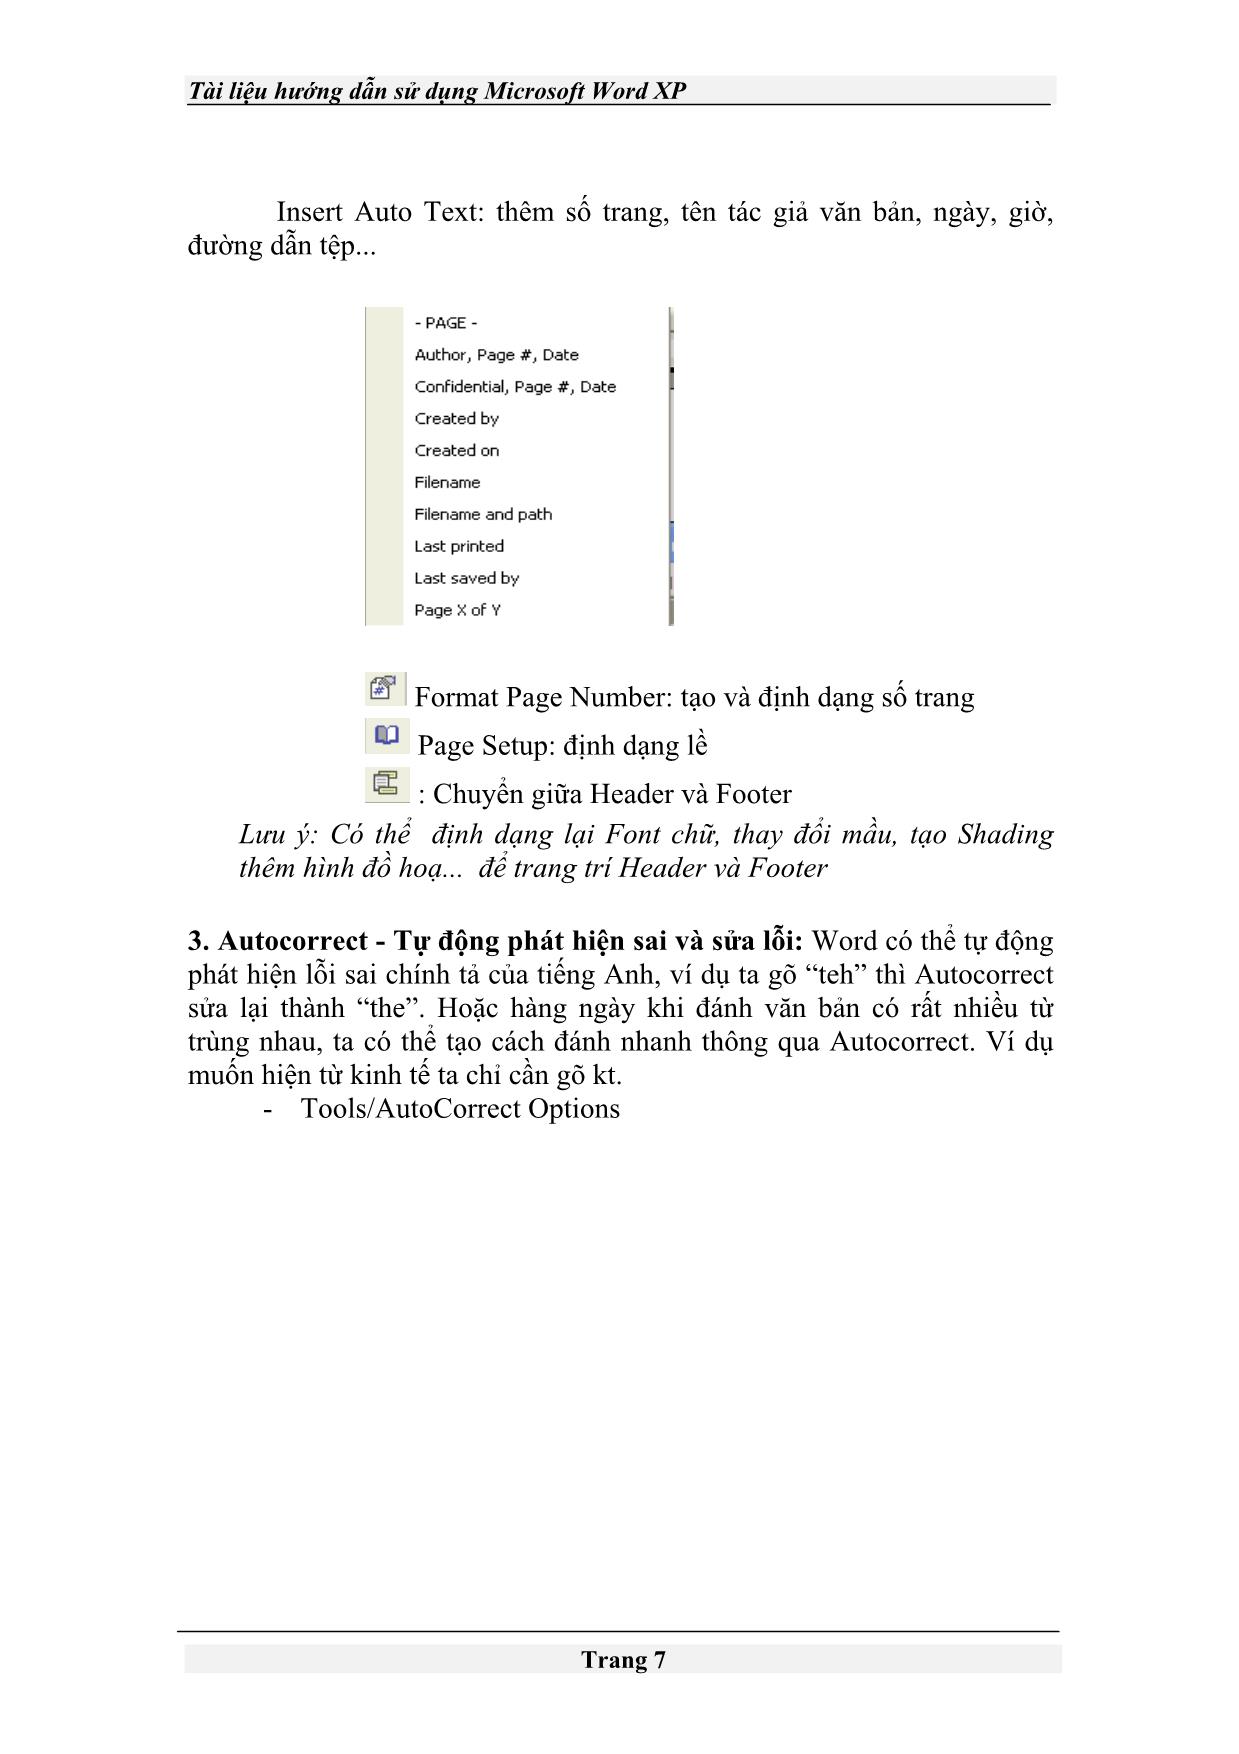 Tài liệu Hướng dẫn sử dụng Microsoft Word XP trang 7